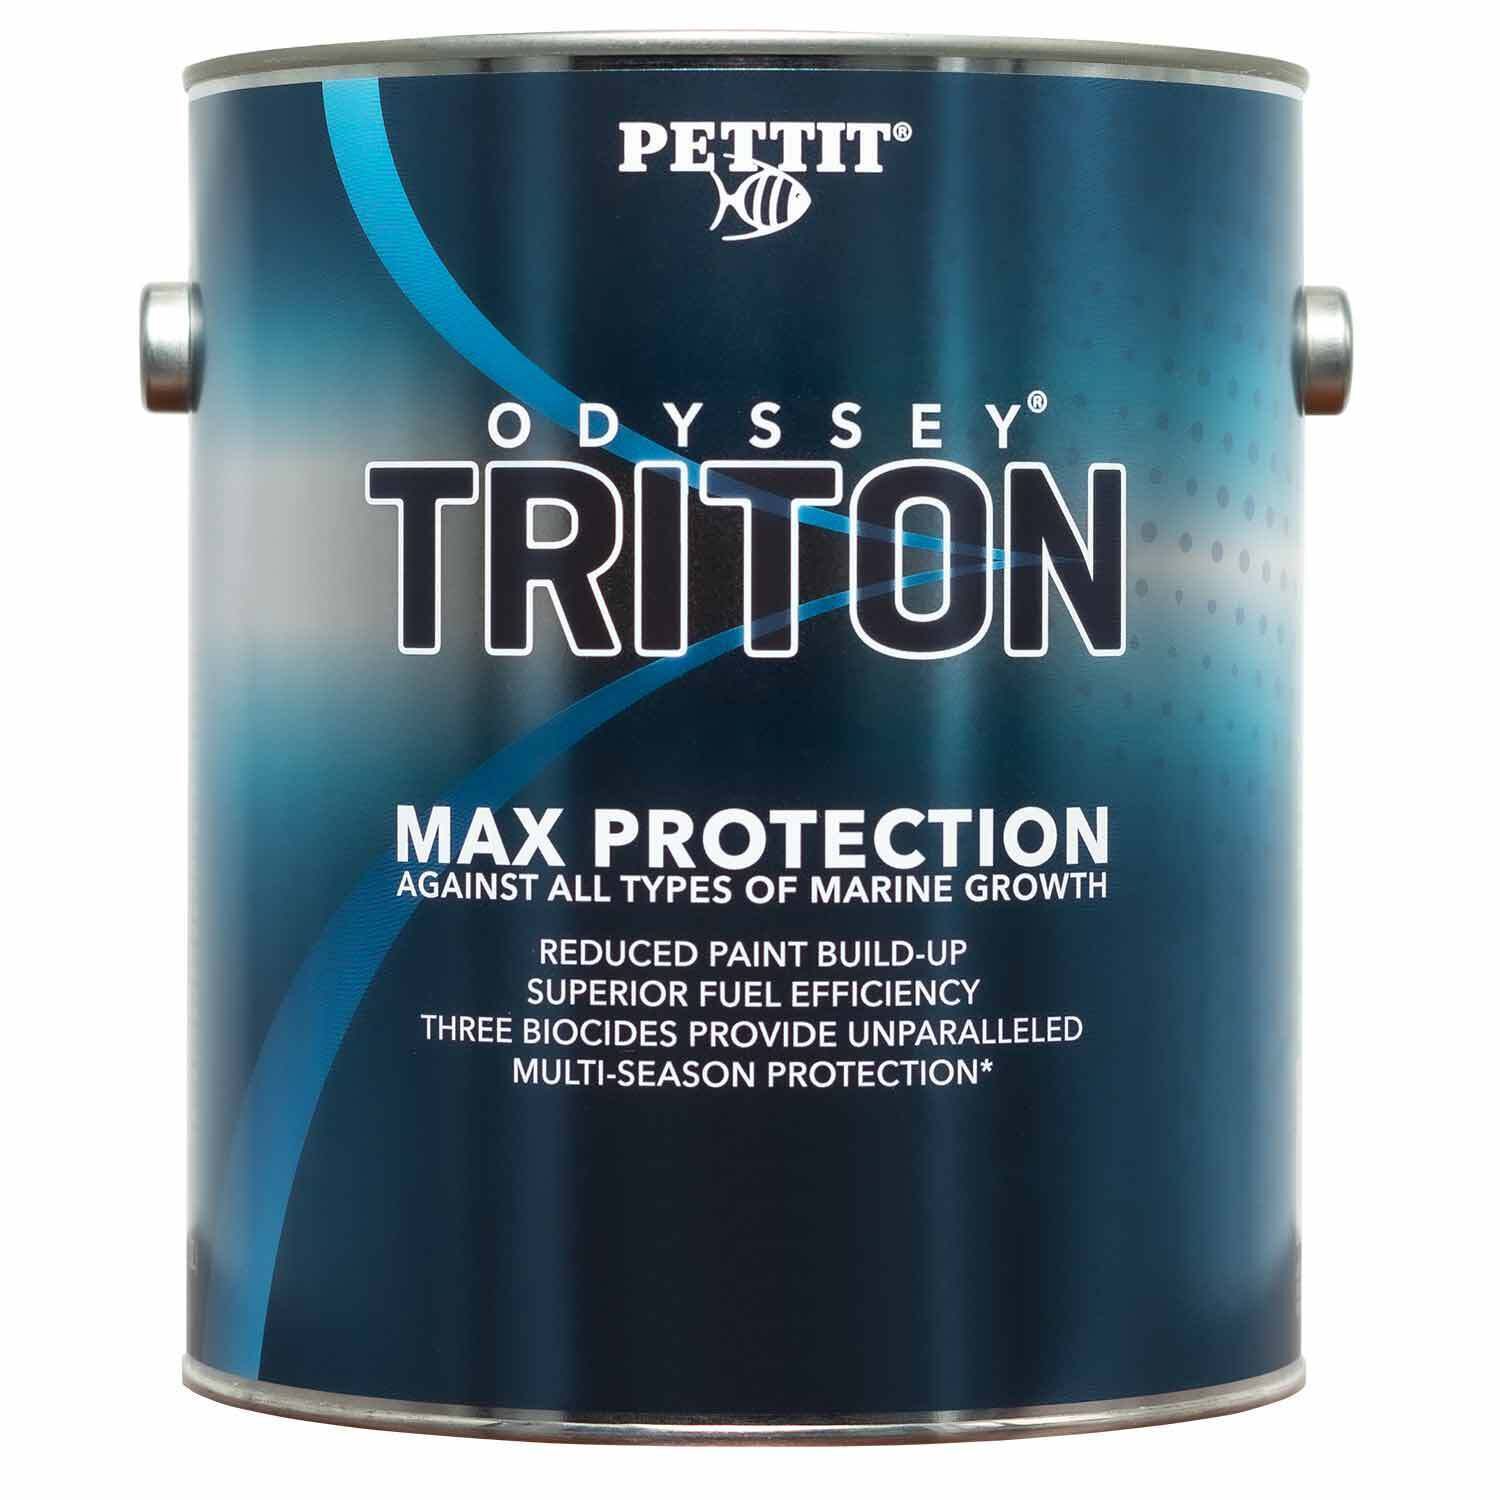 Pettit Paint Bottom Prep 1 gal Fiberglass Dewax Thinner 725469002593 